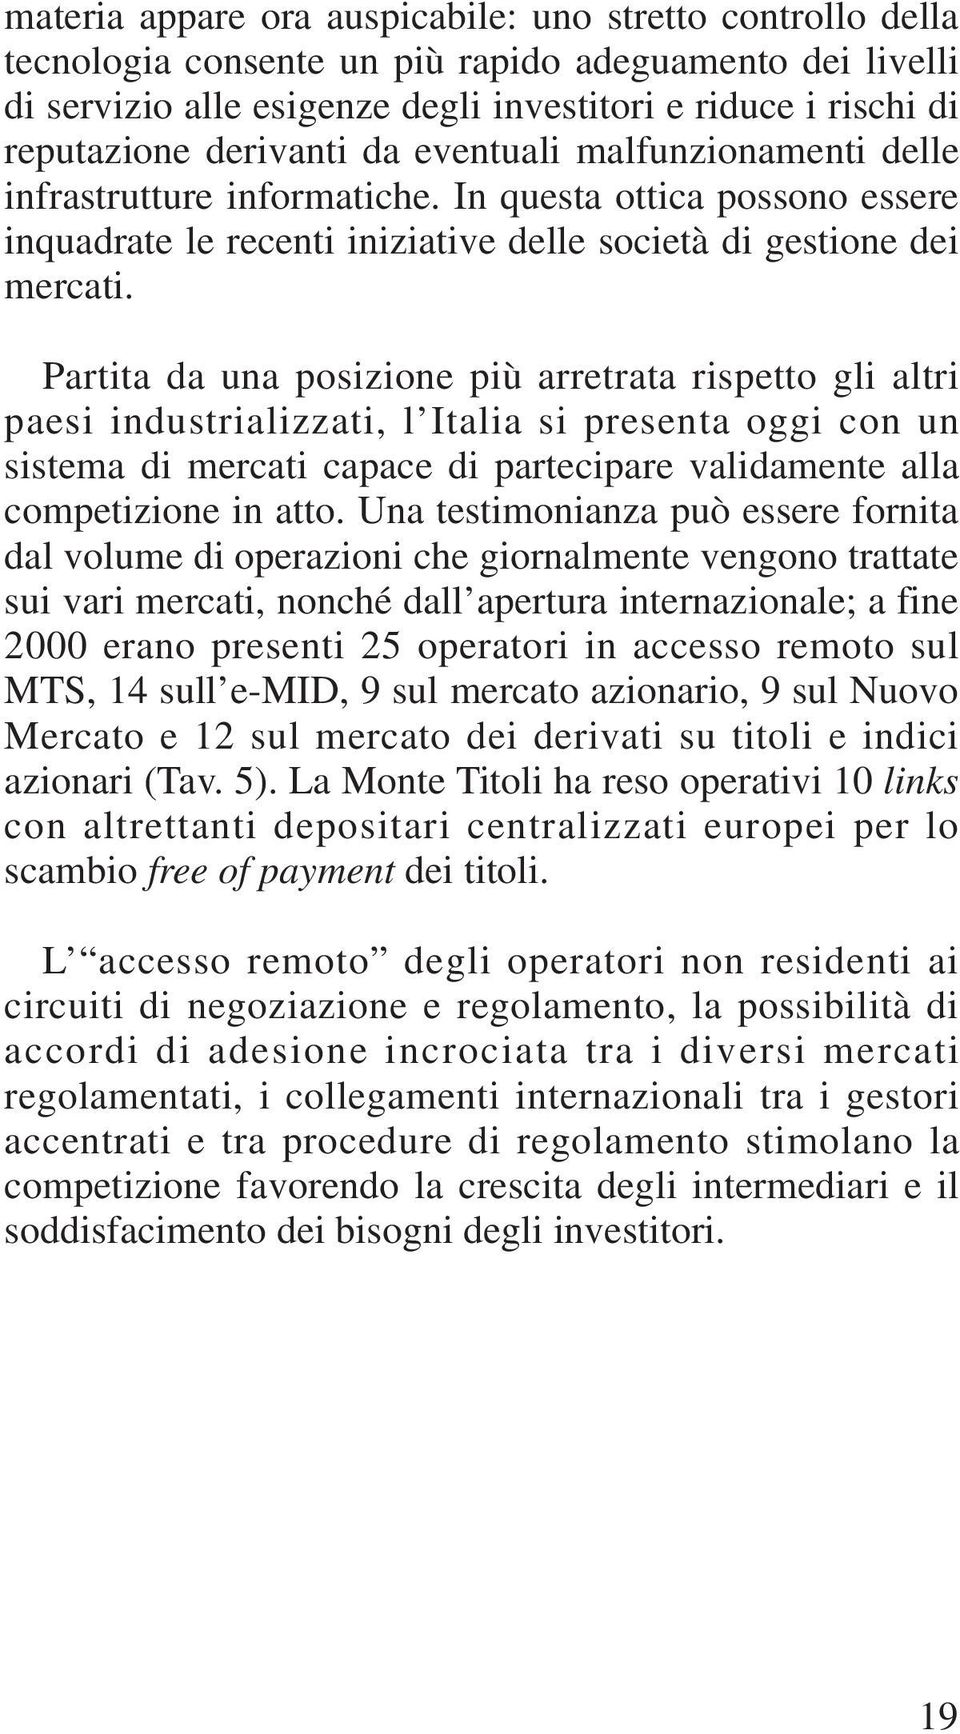 Partita da una posizione più arretrata rispetto gli altri paesi industrializzati, l Italia si presenta oggi con un sistema di mercati capace di partecipare validamente alla competizione in atto.